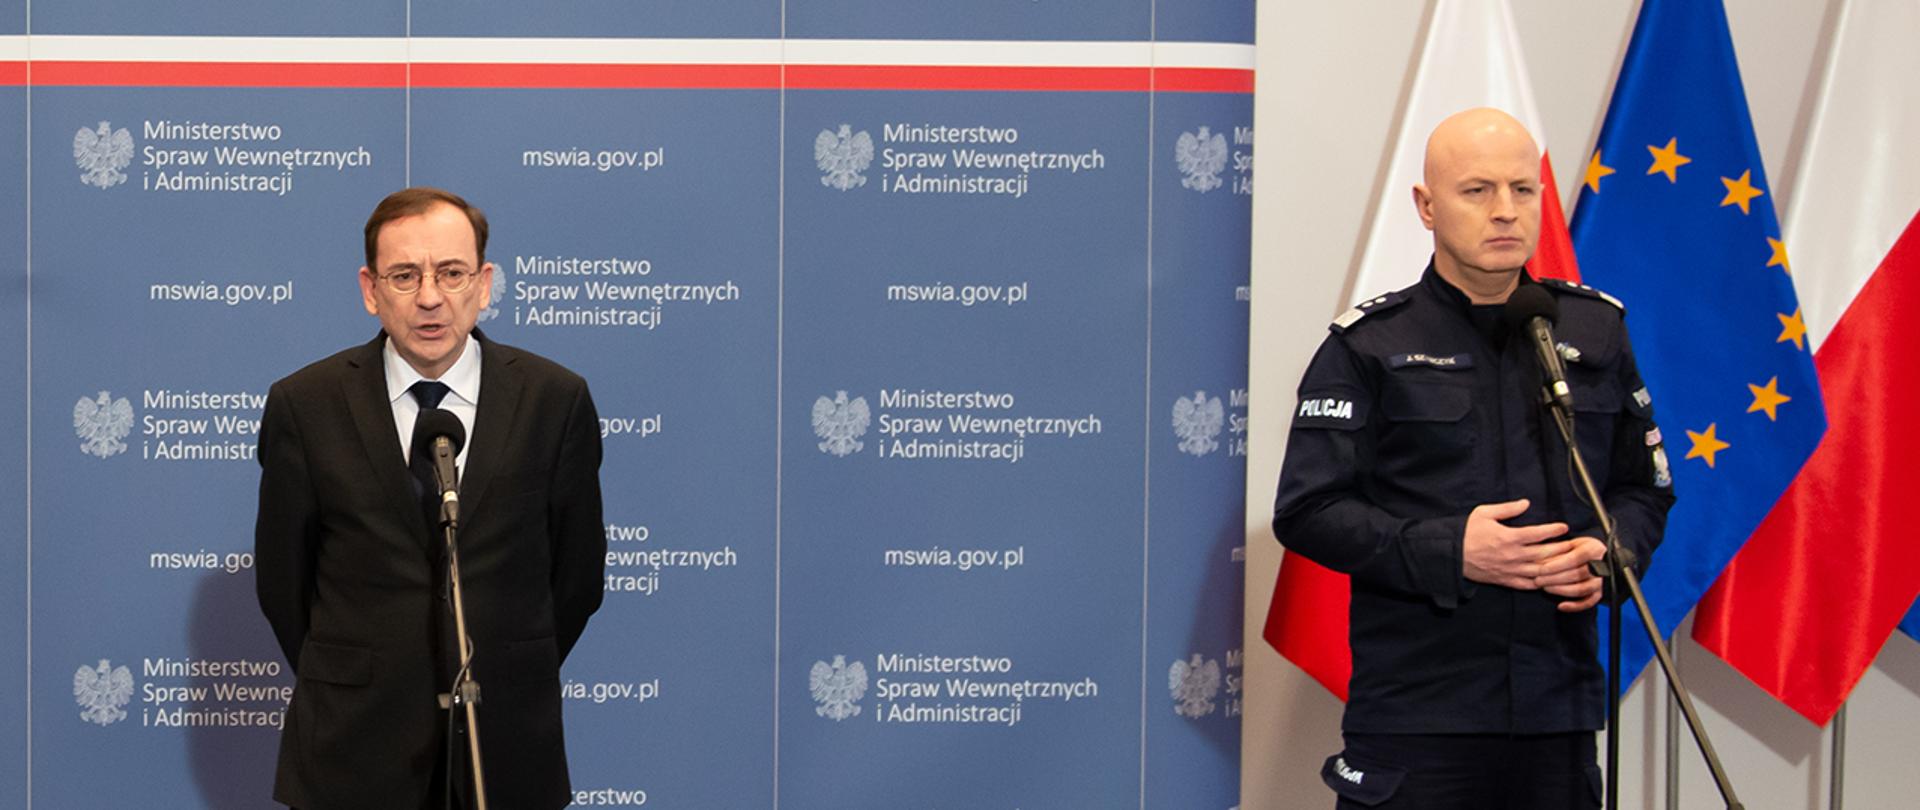 Na zdjęciu widać stojących przy mikrofonach Mariusza Kamińskiego ministra SWiA i gen. insp Jarosława Szymczyka. Minister przemawia. W tle widać fragment ścianki MSWiA i flagi narodowe Polski i UE.